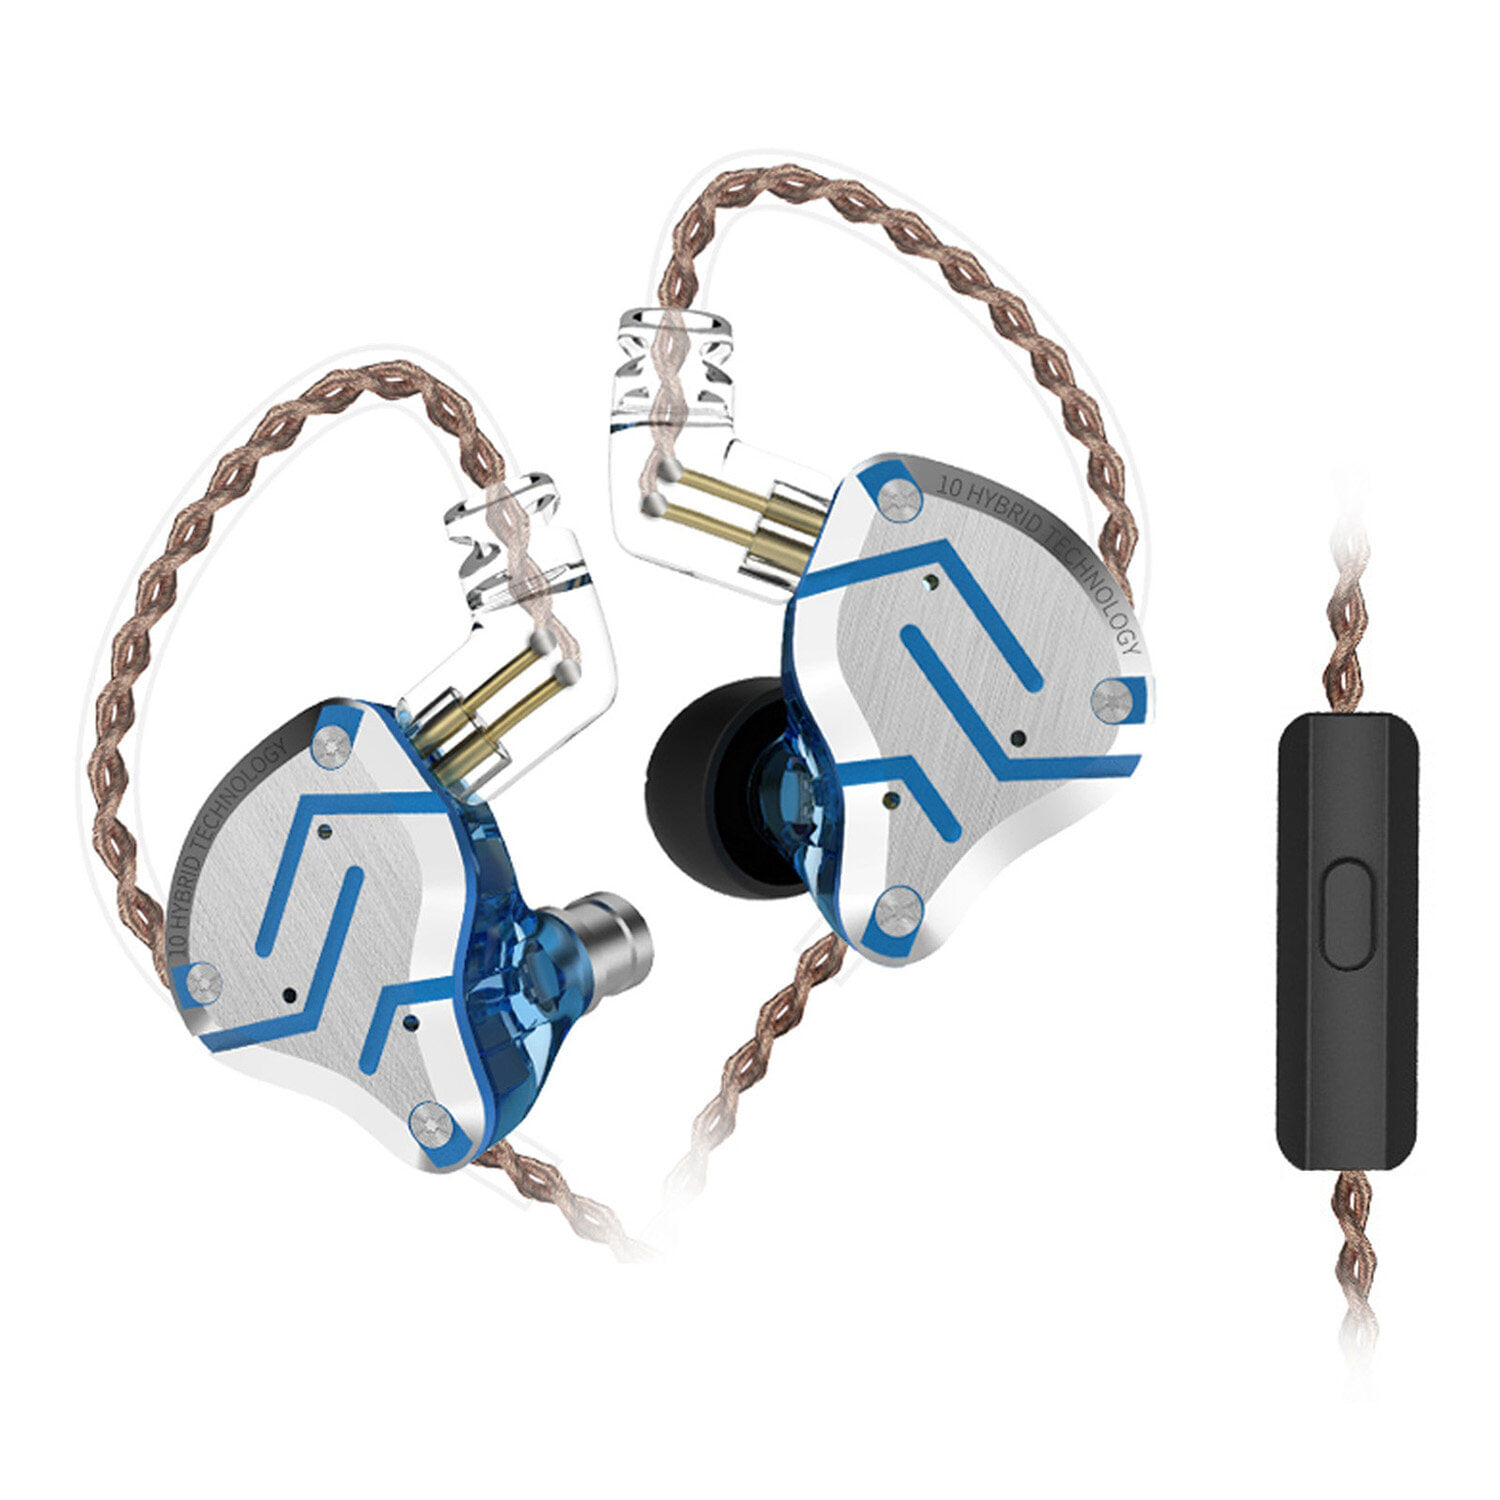 Audifonos Internos Con Cable Kz Zs10 Pro Hifi Music Con Micrófono Glare Blue